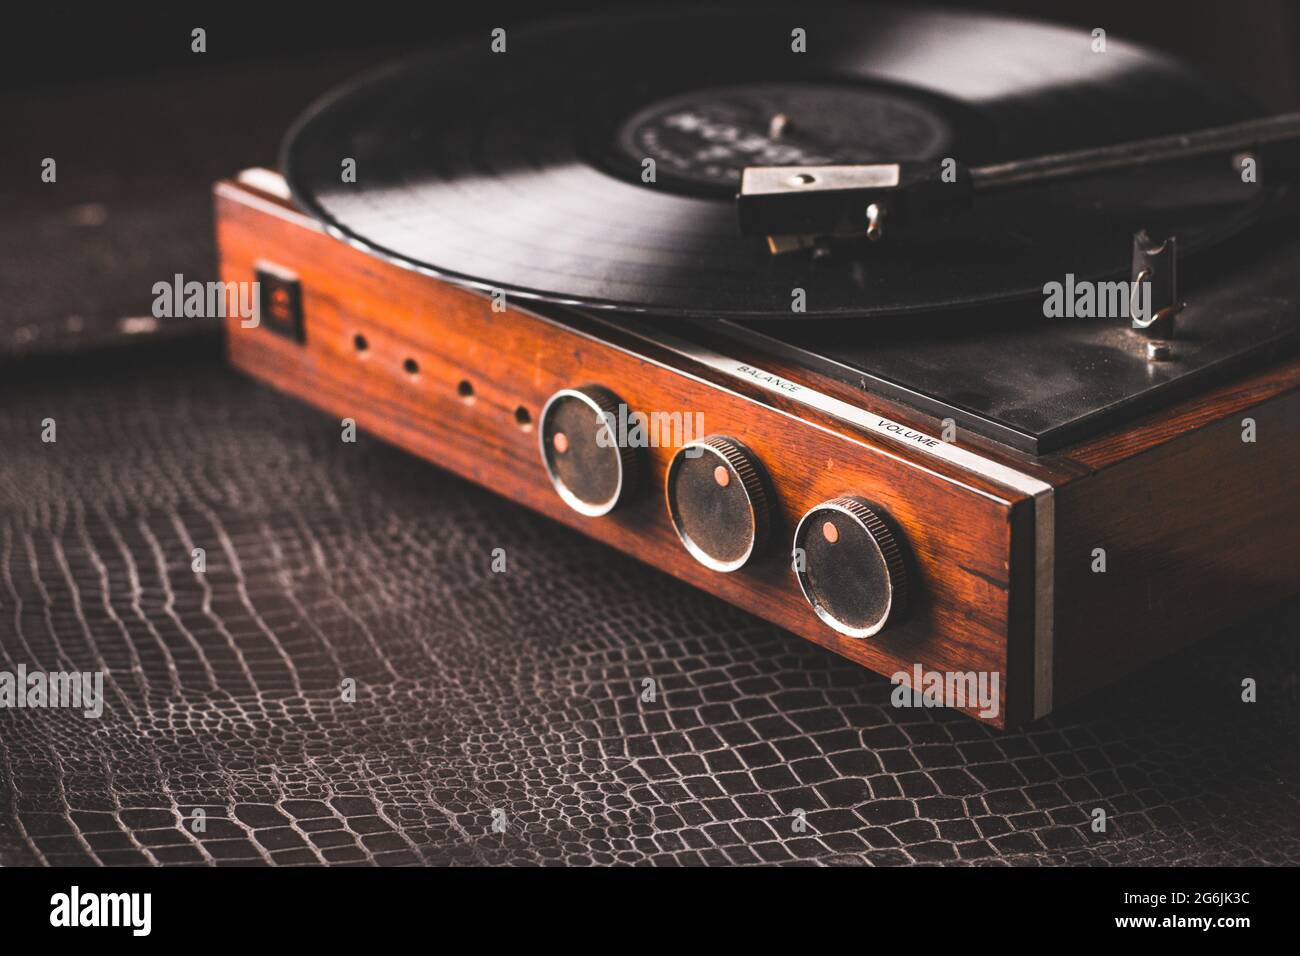 Reproductor grabador con disco de vinilo en la tabla en la habitación Foto de stock